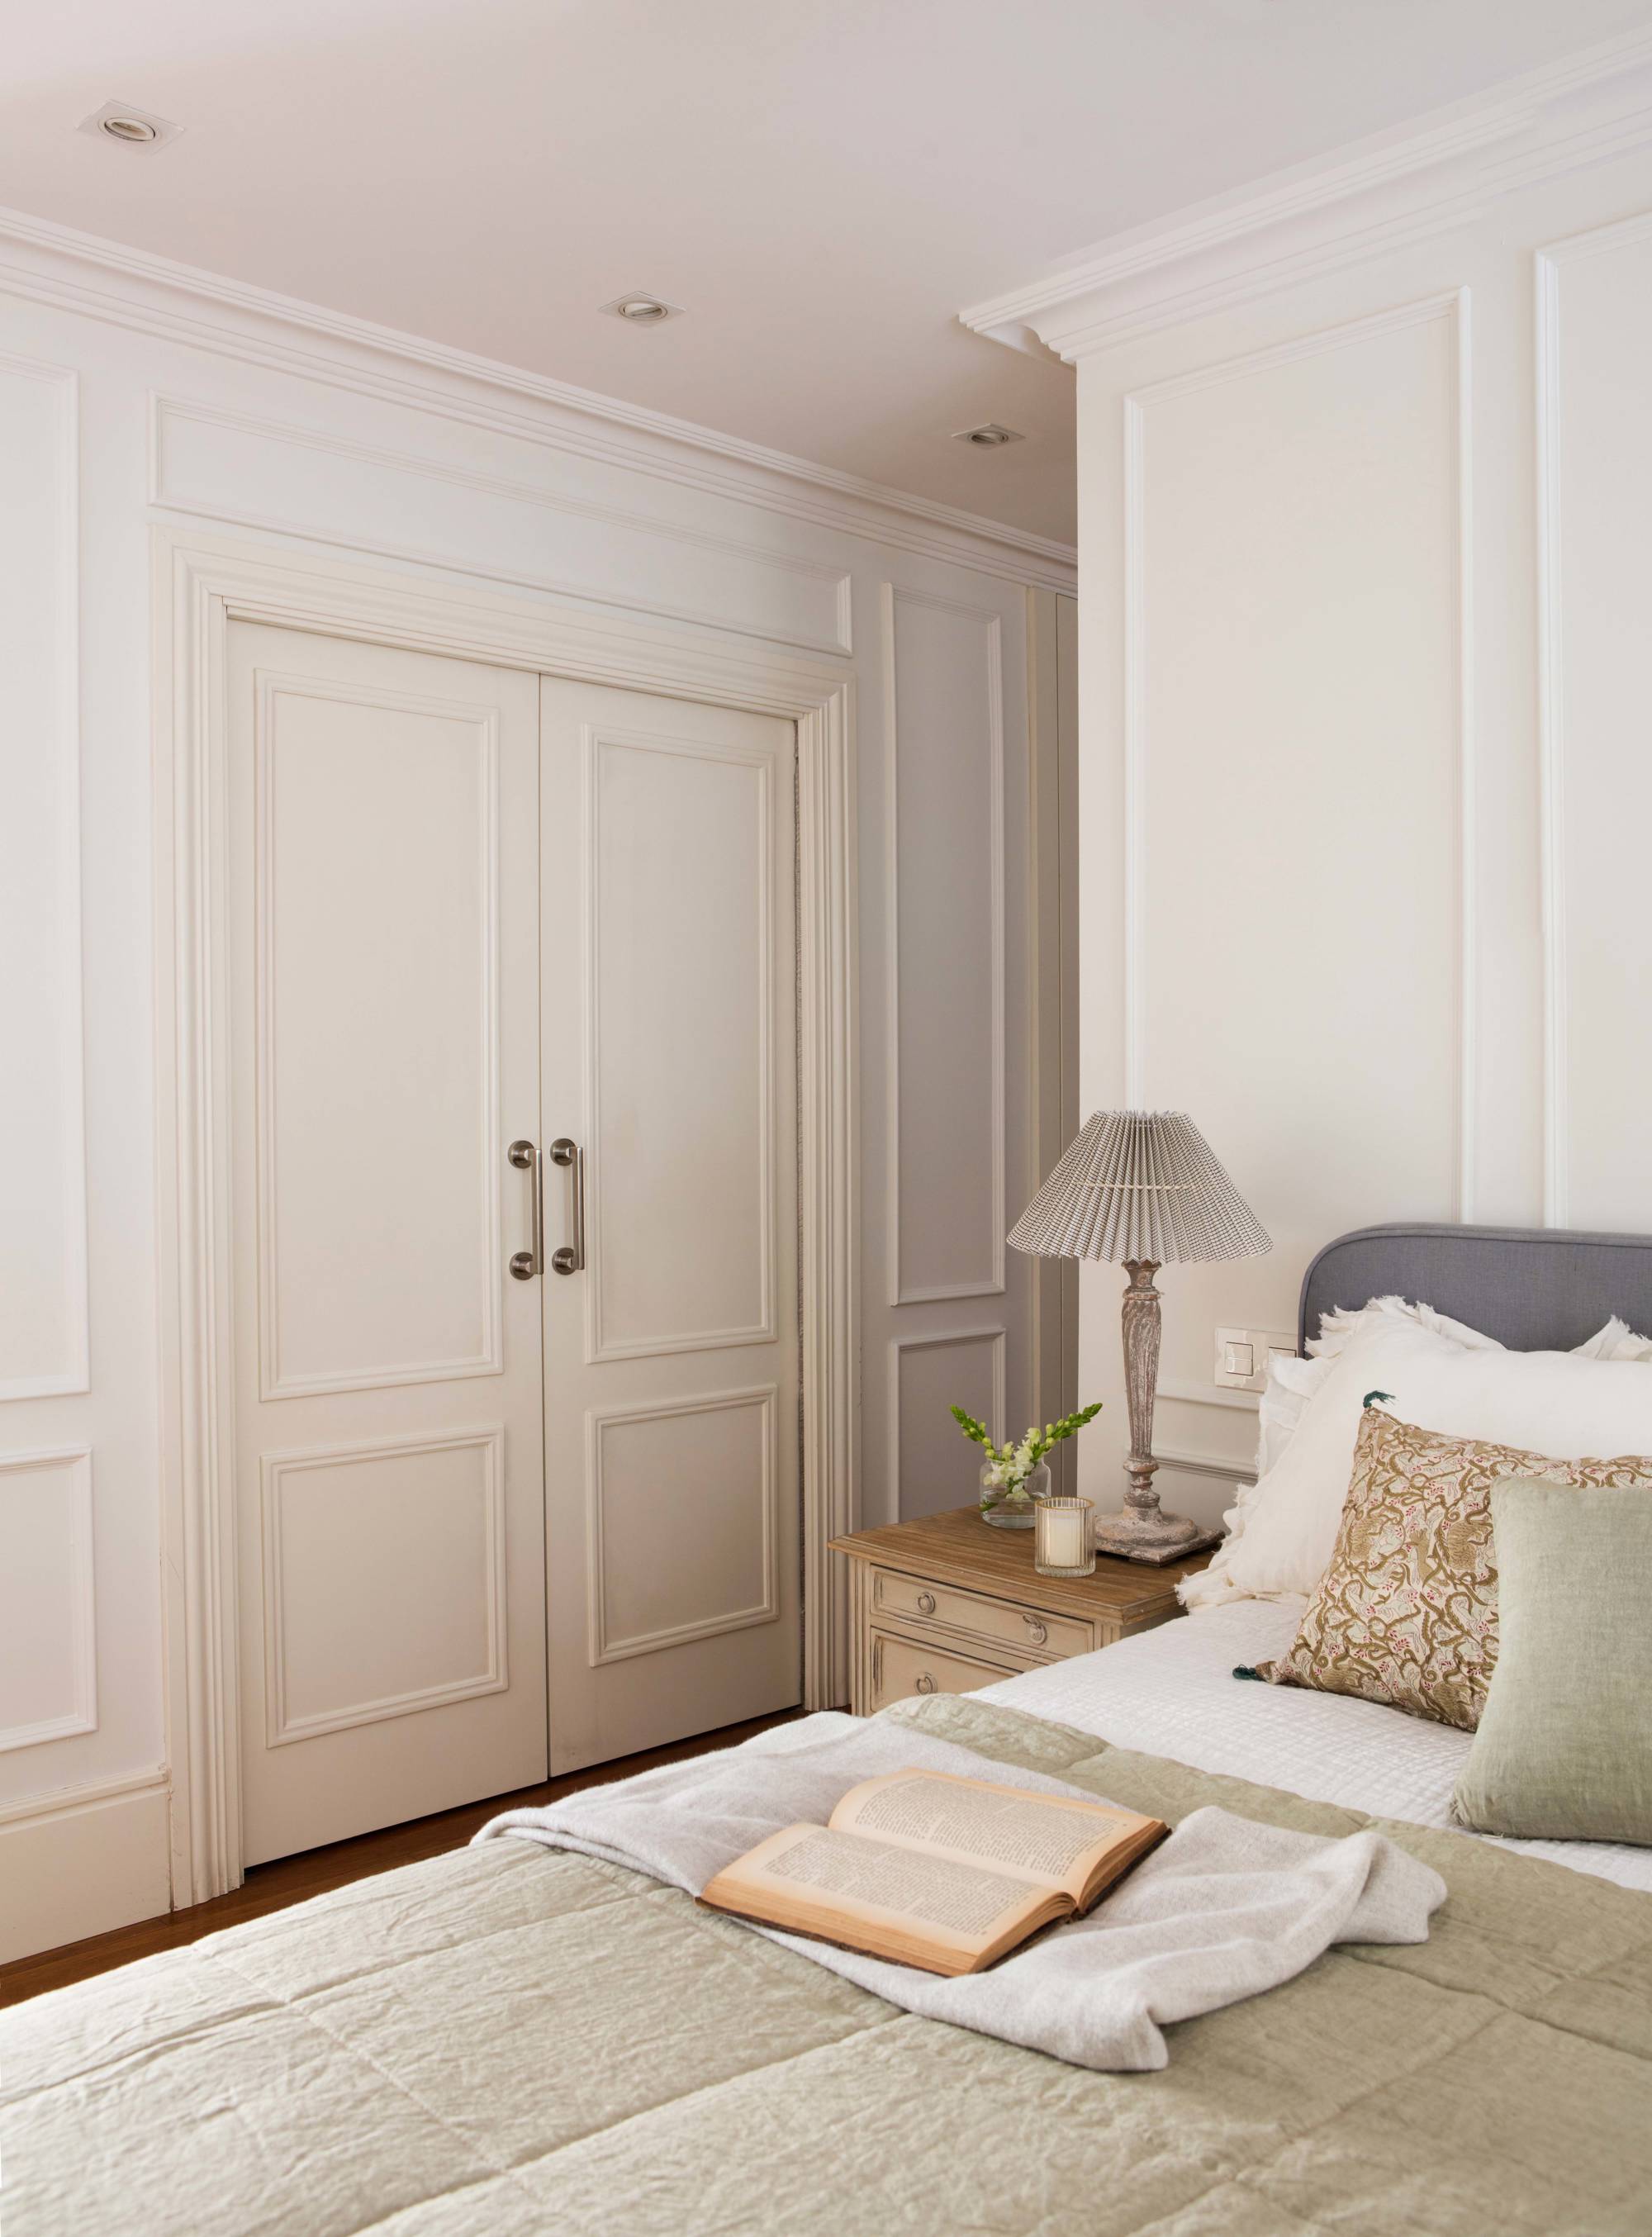 Dormitorio con molduras decorativas y puertas correderas